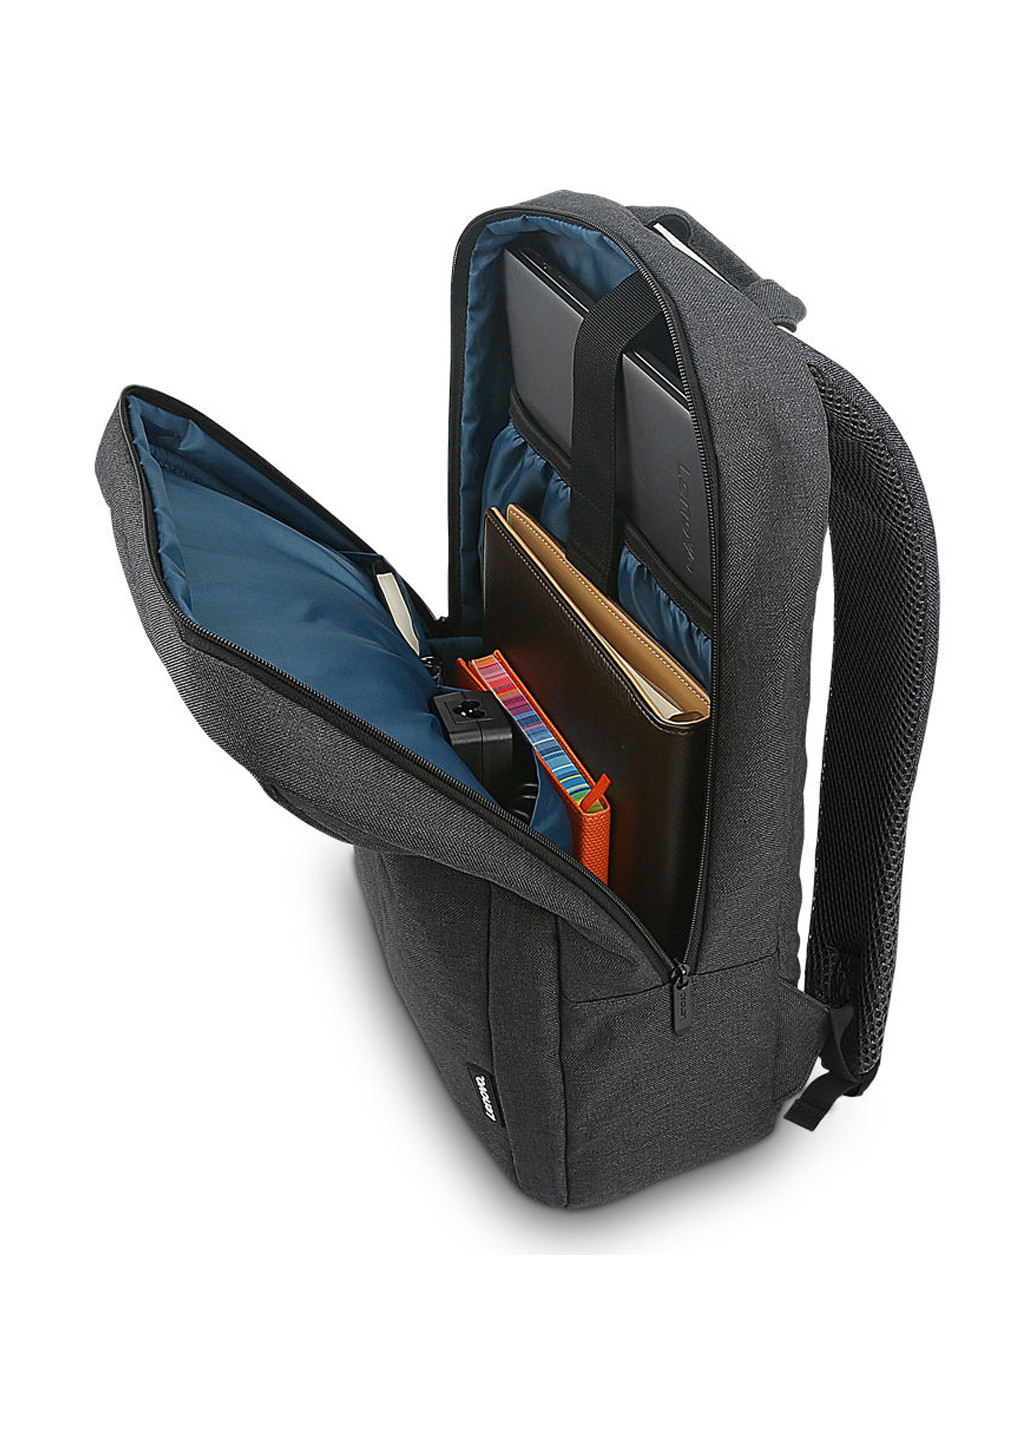 Рюкзак Casual B210 для ноутбука 15,6 чорний (GX40Q17225) Lenovo backpack b210 casual 15.6" black (gx40q17225) (137227684)